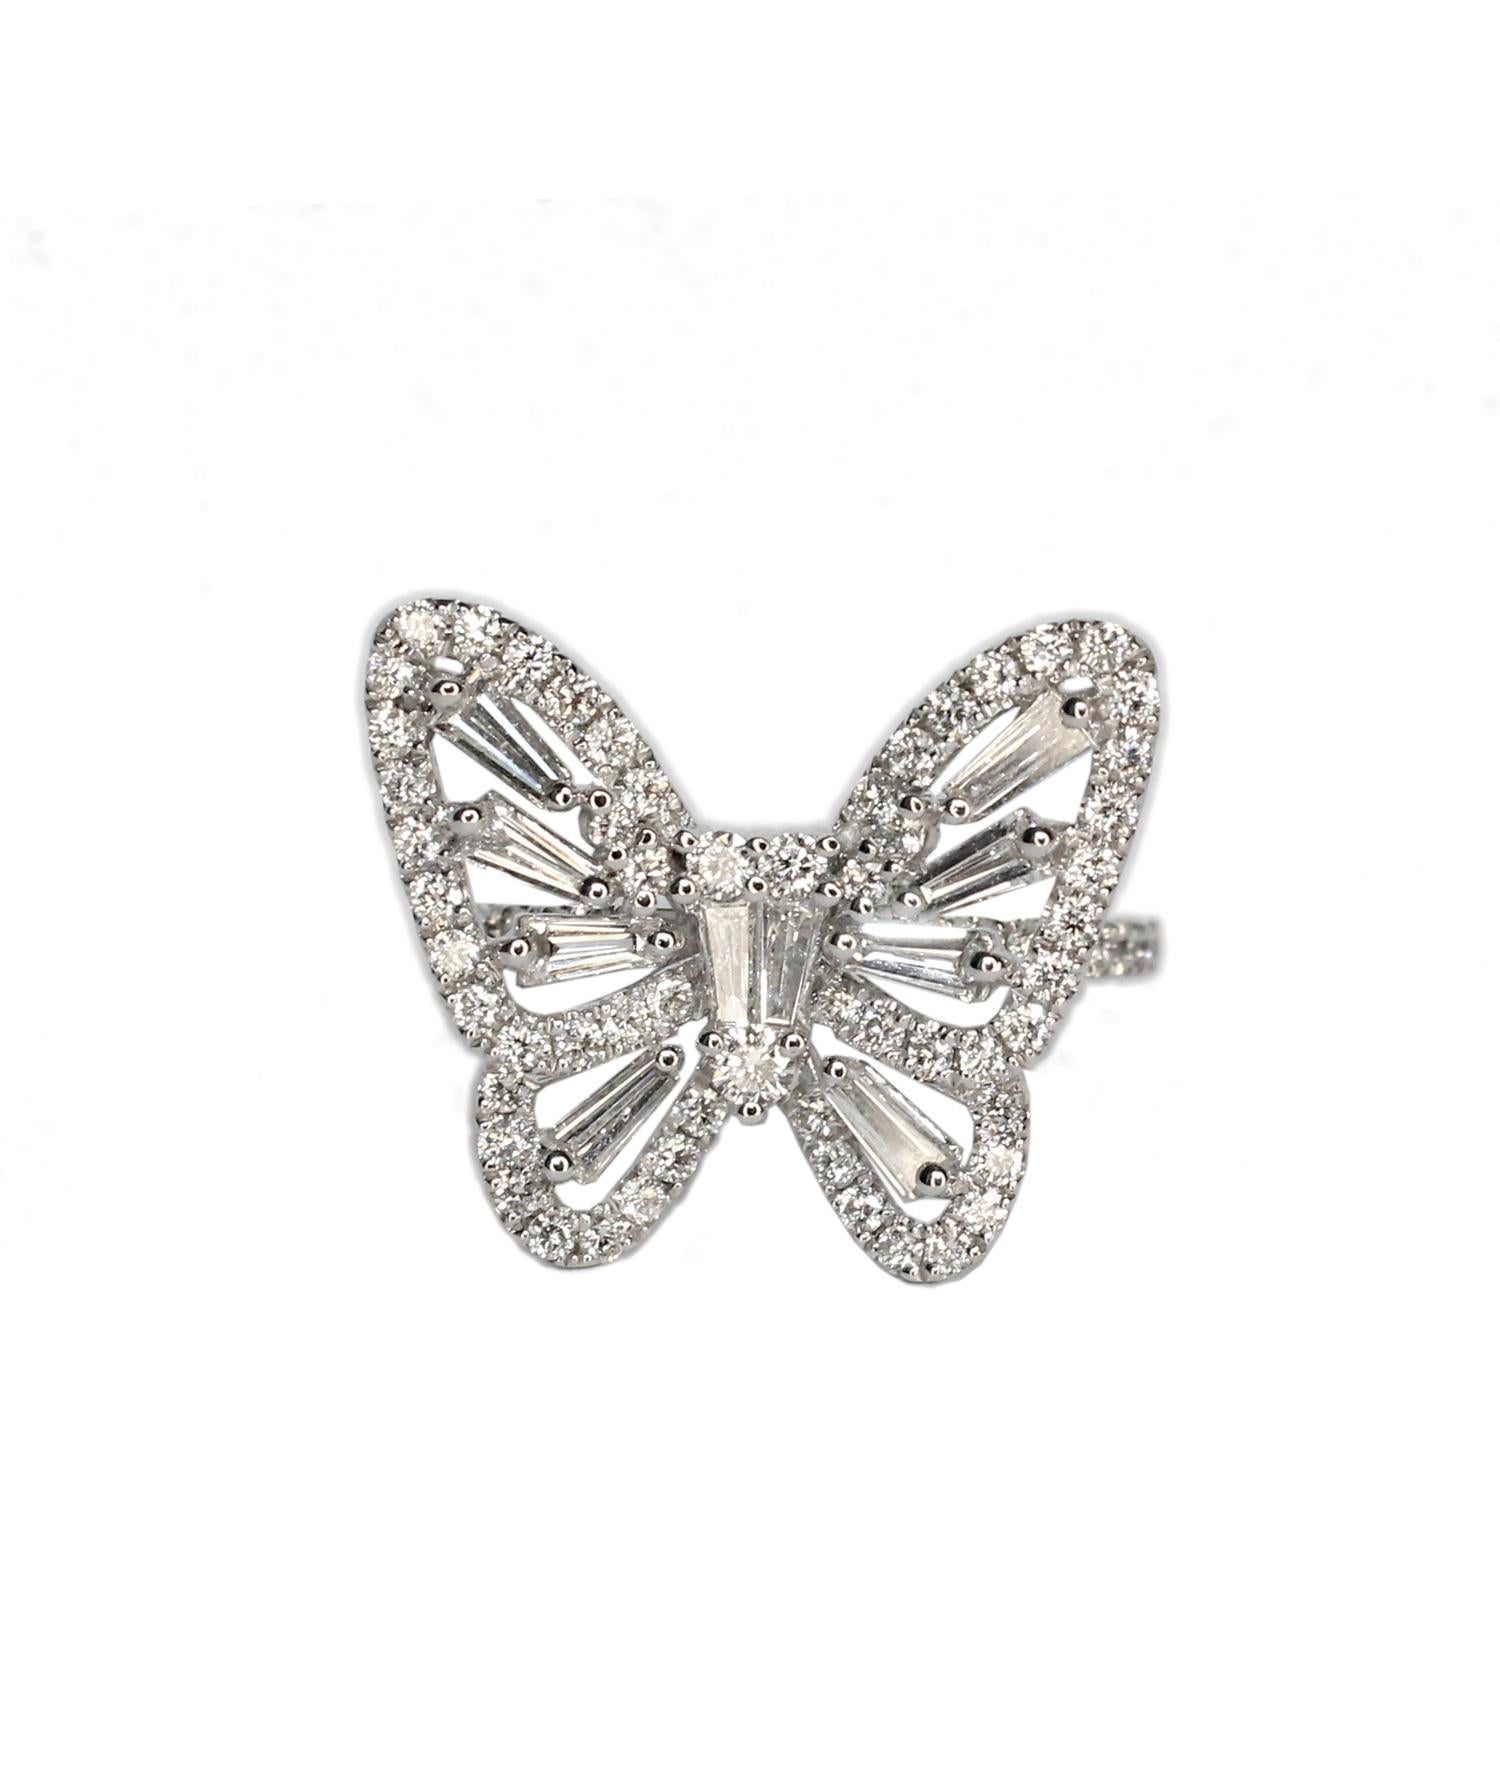 Tess Van Ghert 18K White Gold Baguette Diamond Butterfly Cocktail Ring For Sale 2